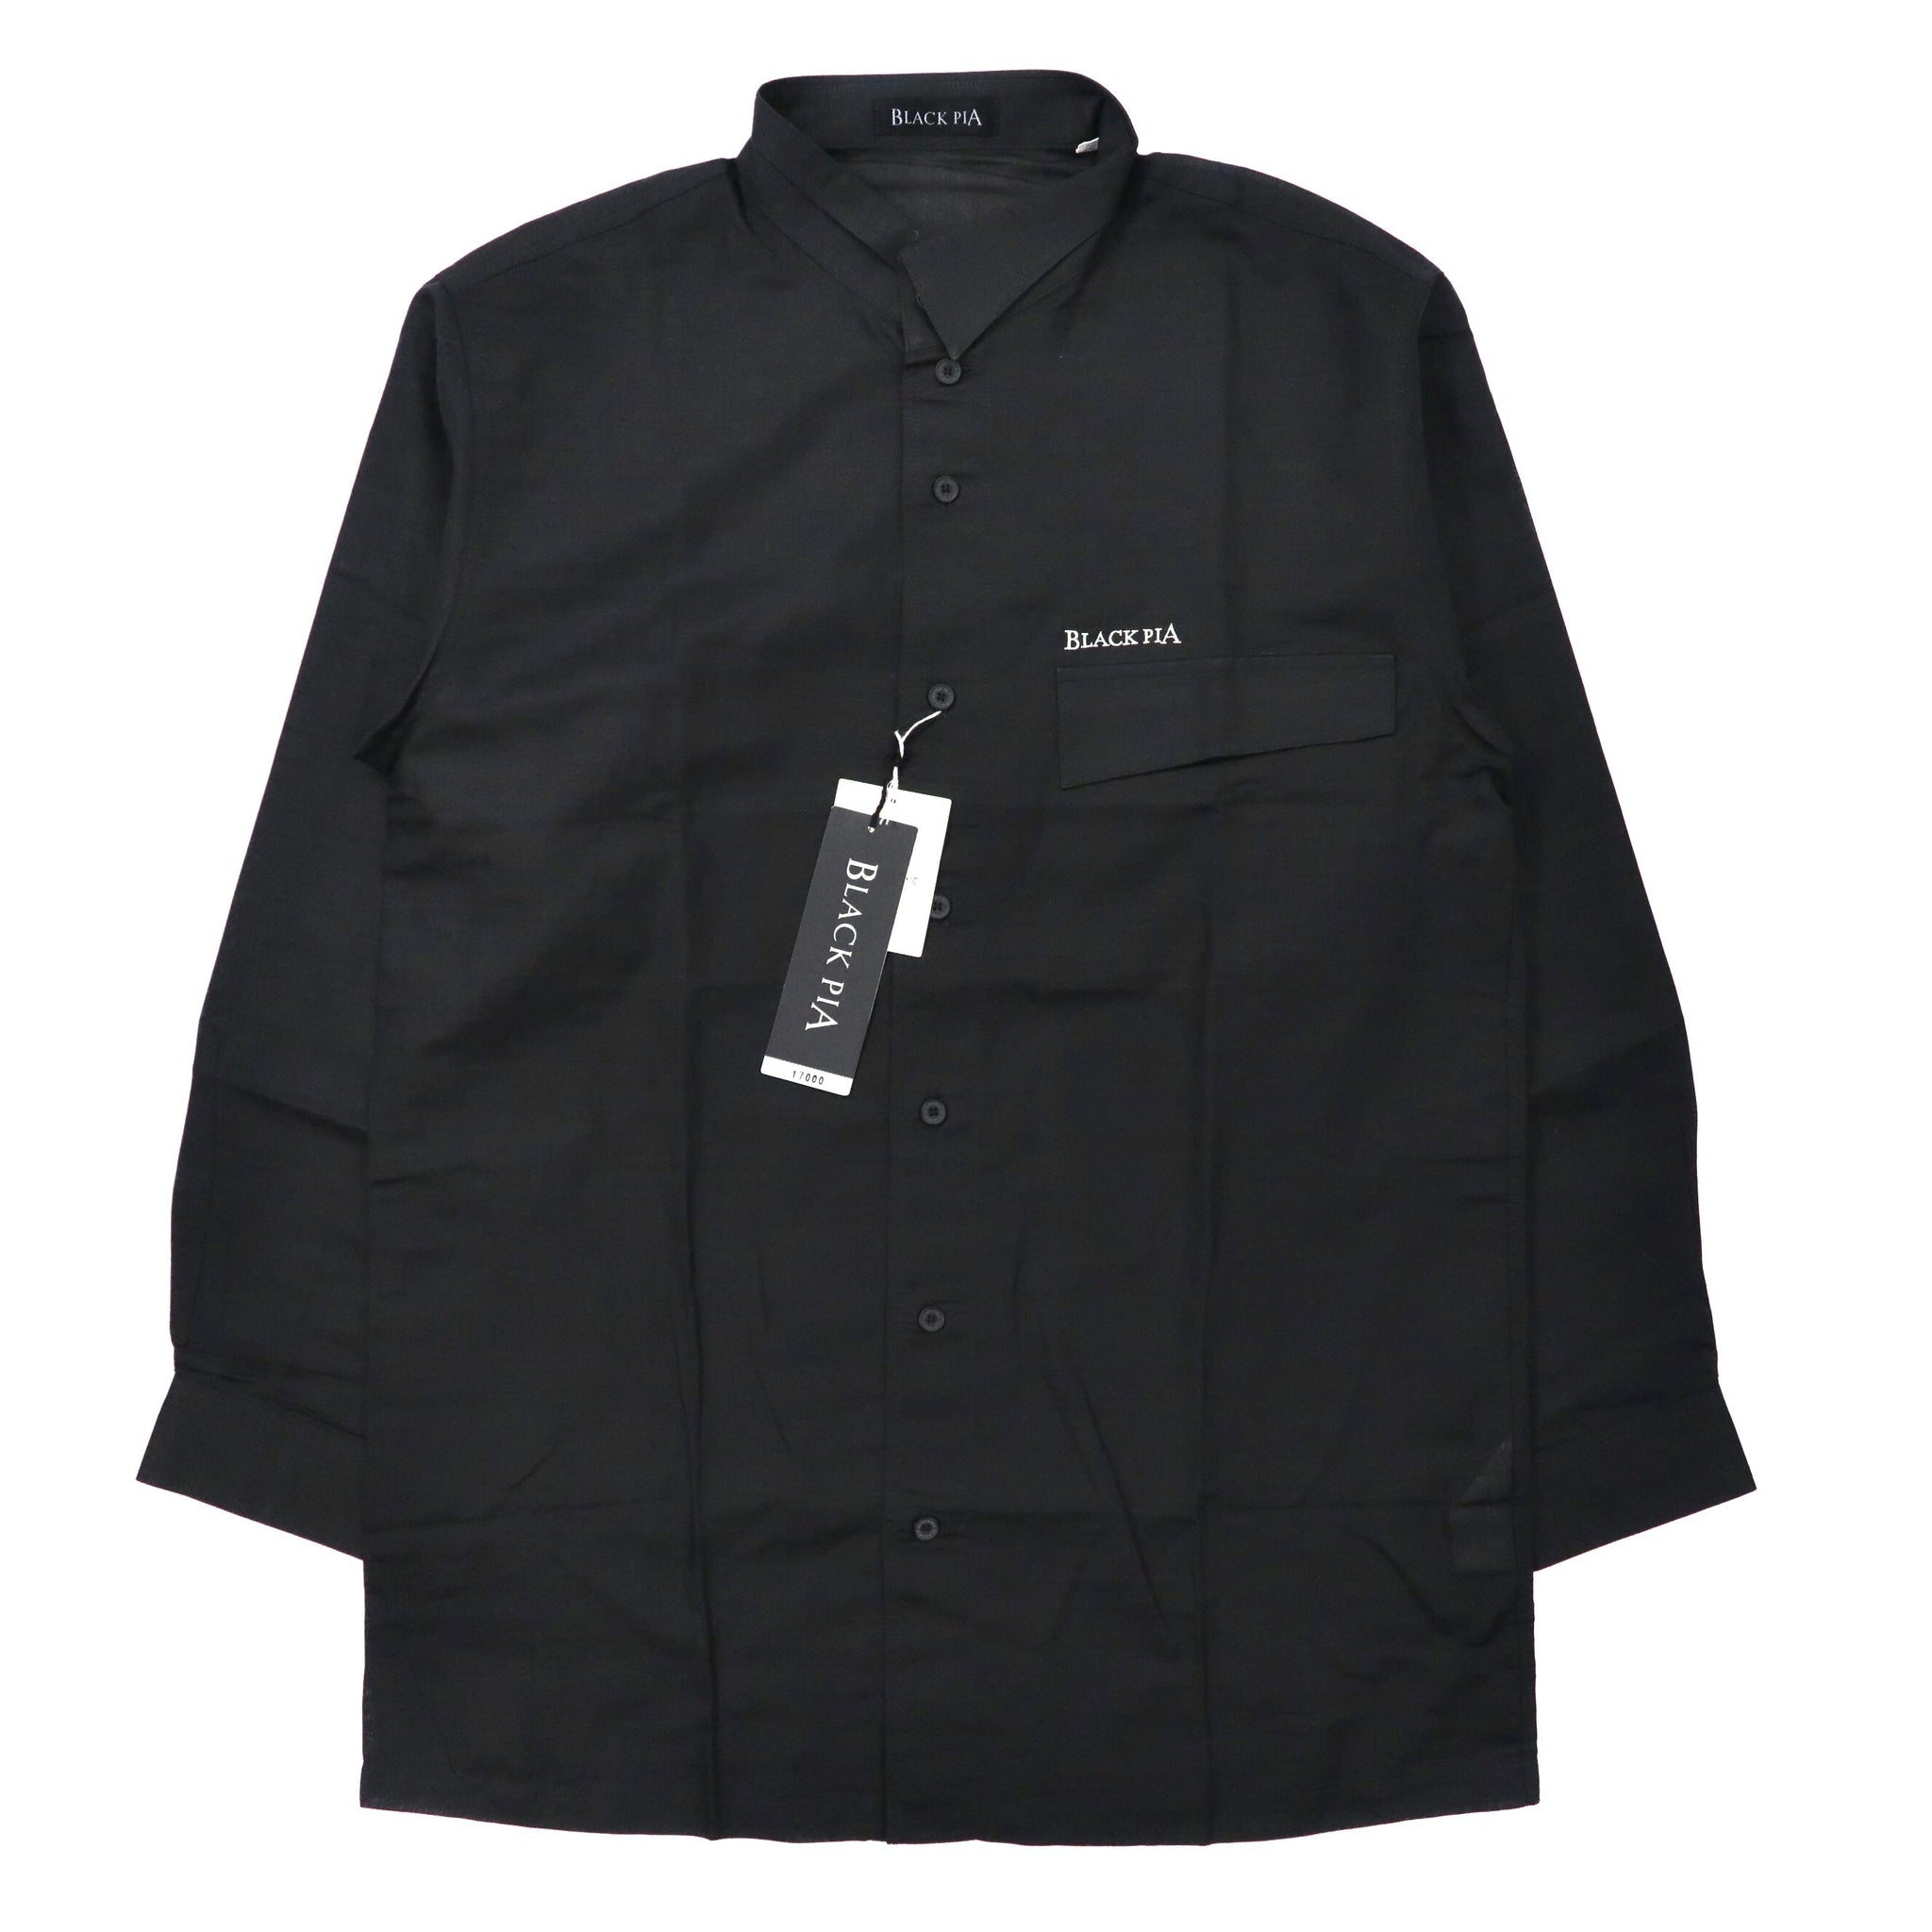 BLACK PIA ( RAIKA ) アシンメトリーカラー デザインシャツ M ブラック リネン シースルー ロゴ刺繍 日本製 未使用品